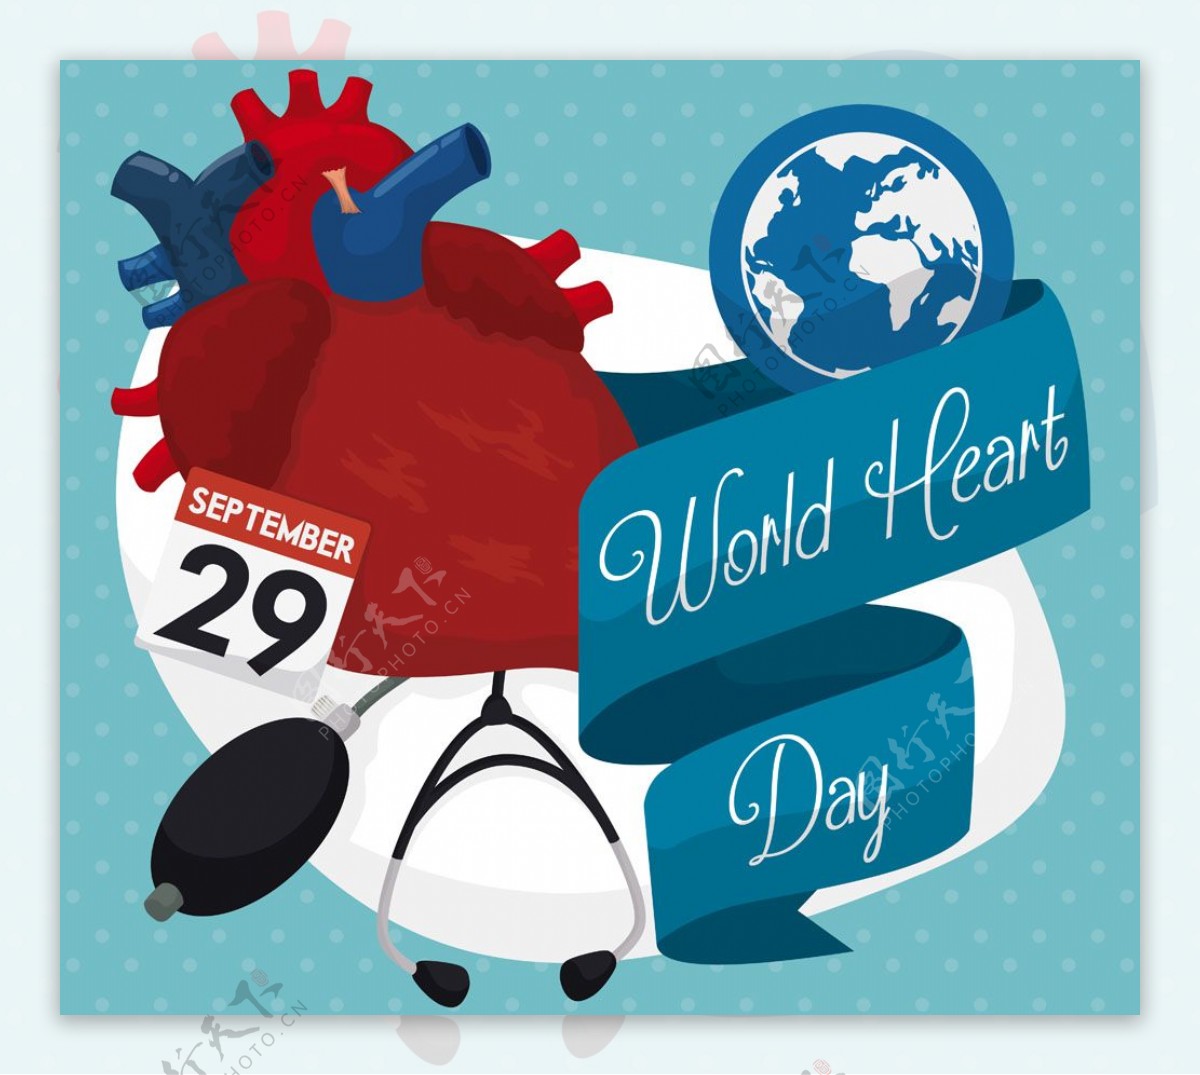 世界心脏日宣传画册模板图片